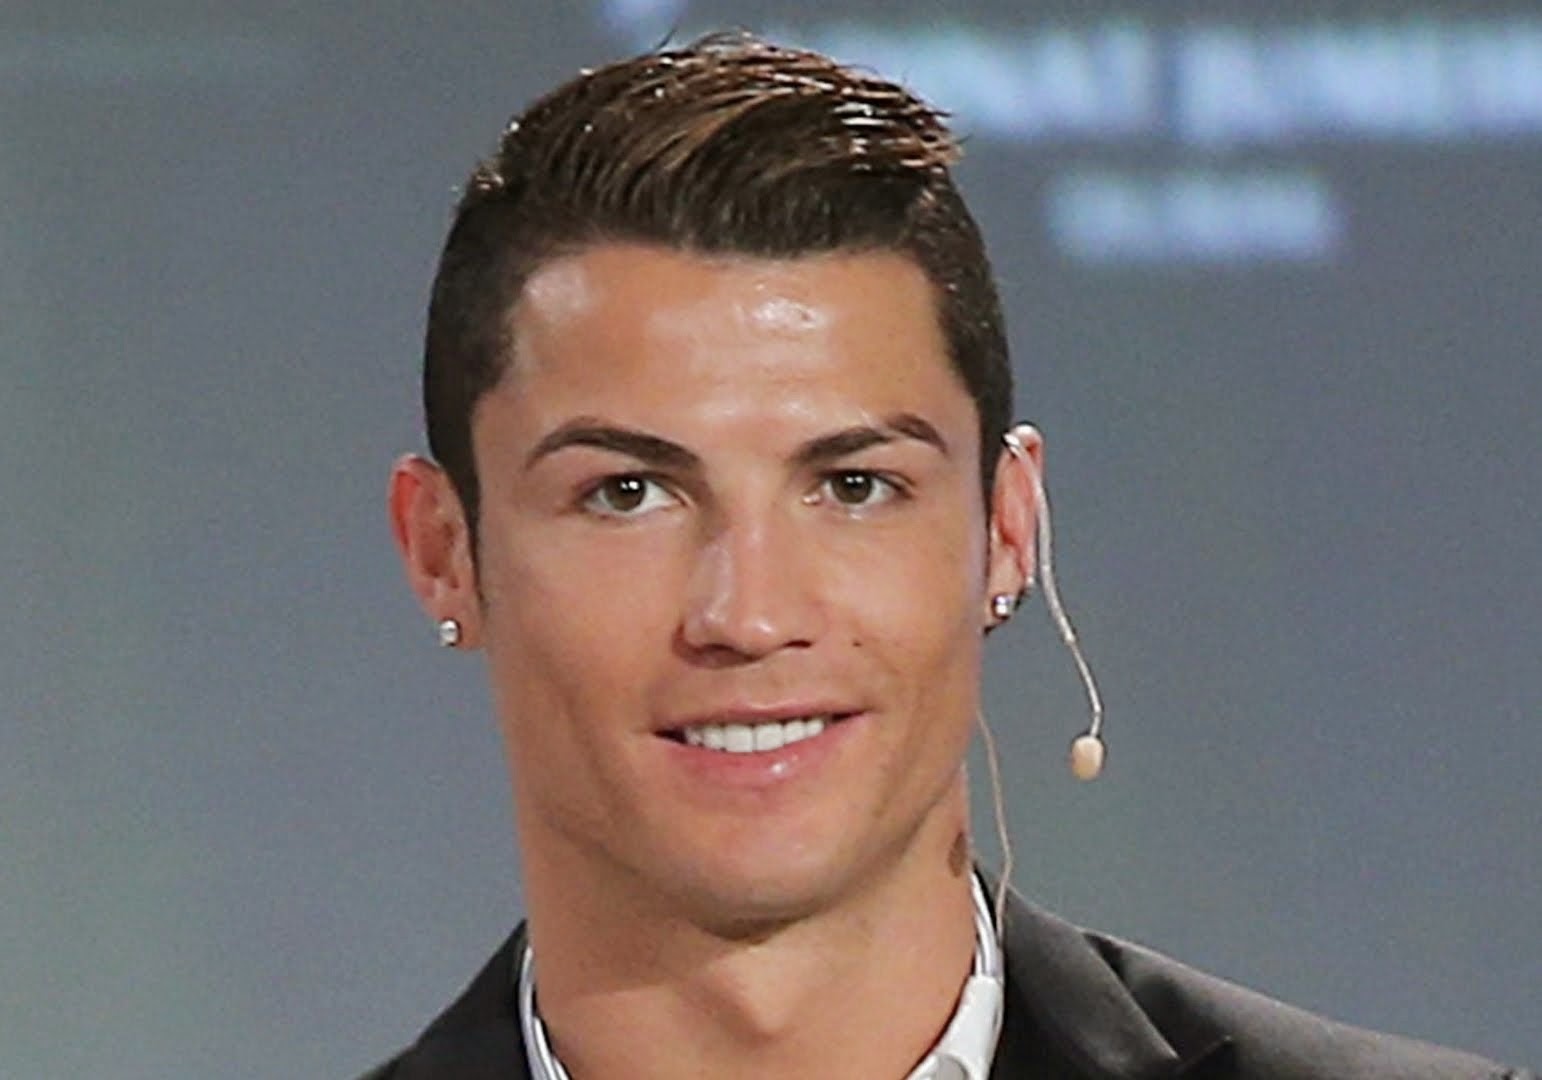 Kumpulan Gaya Rambut Cristiano Ronaldo Terbaru dan Lengkap Keren